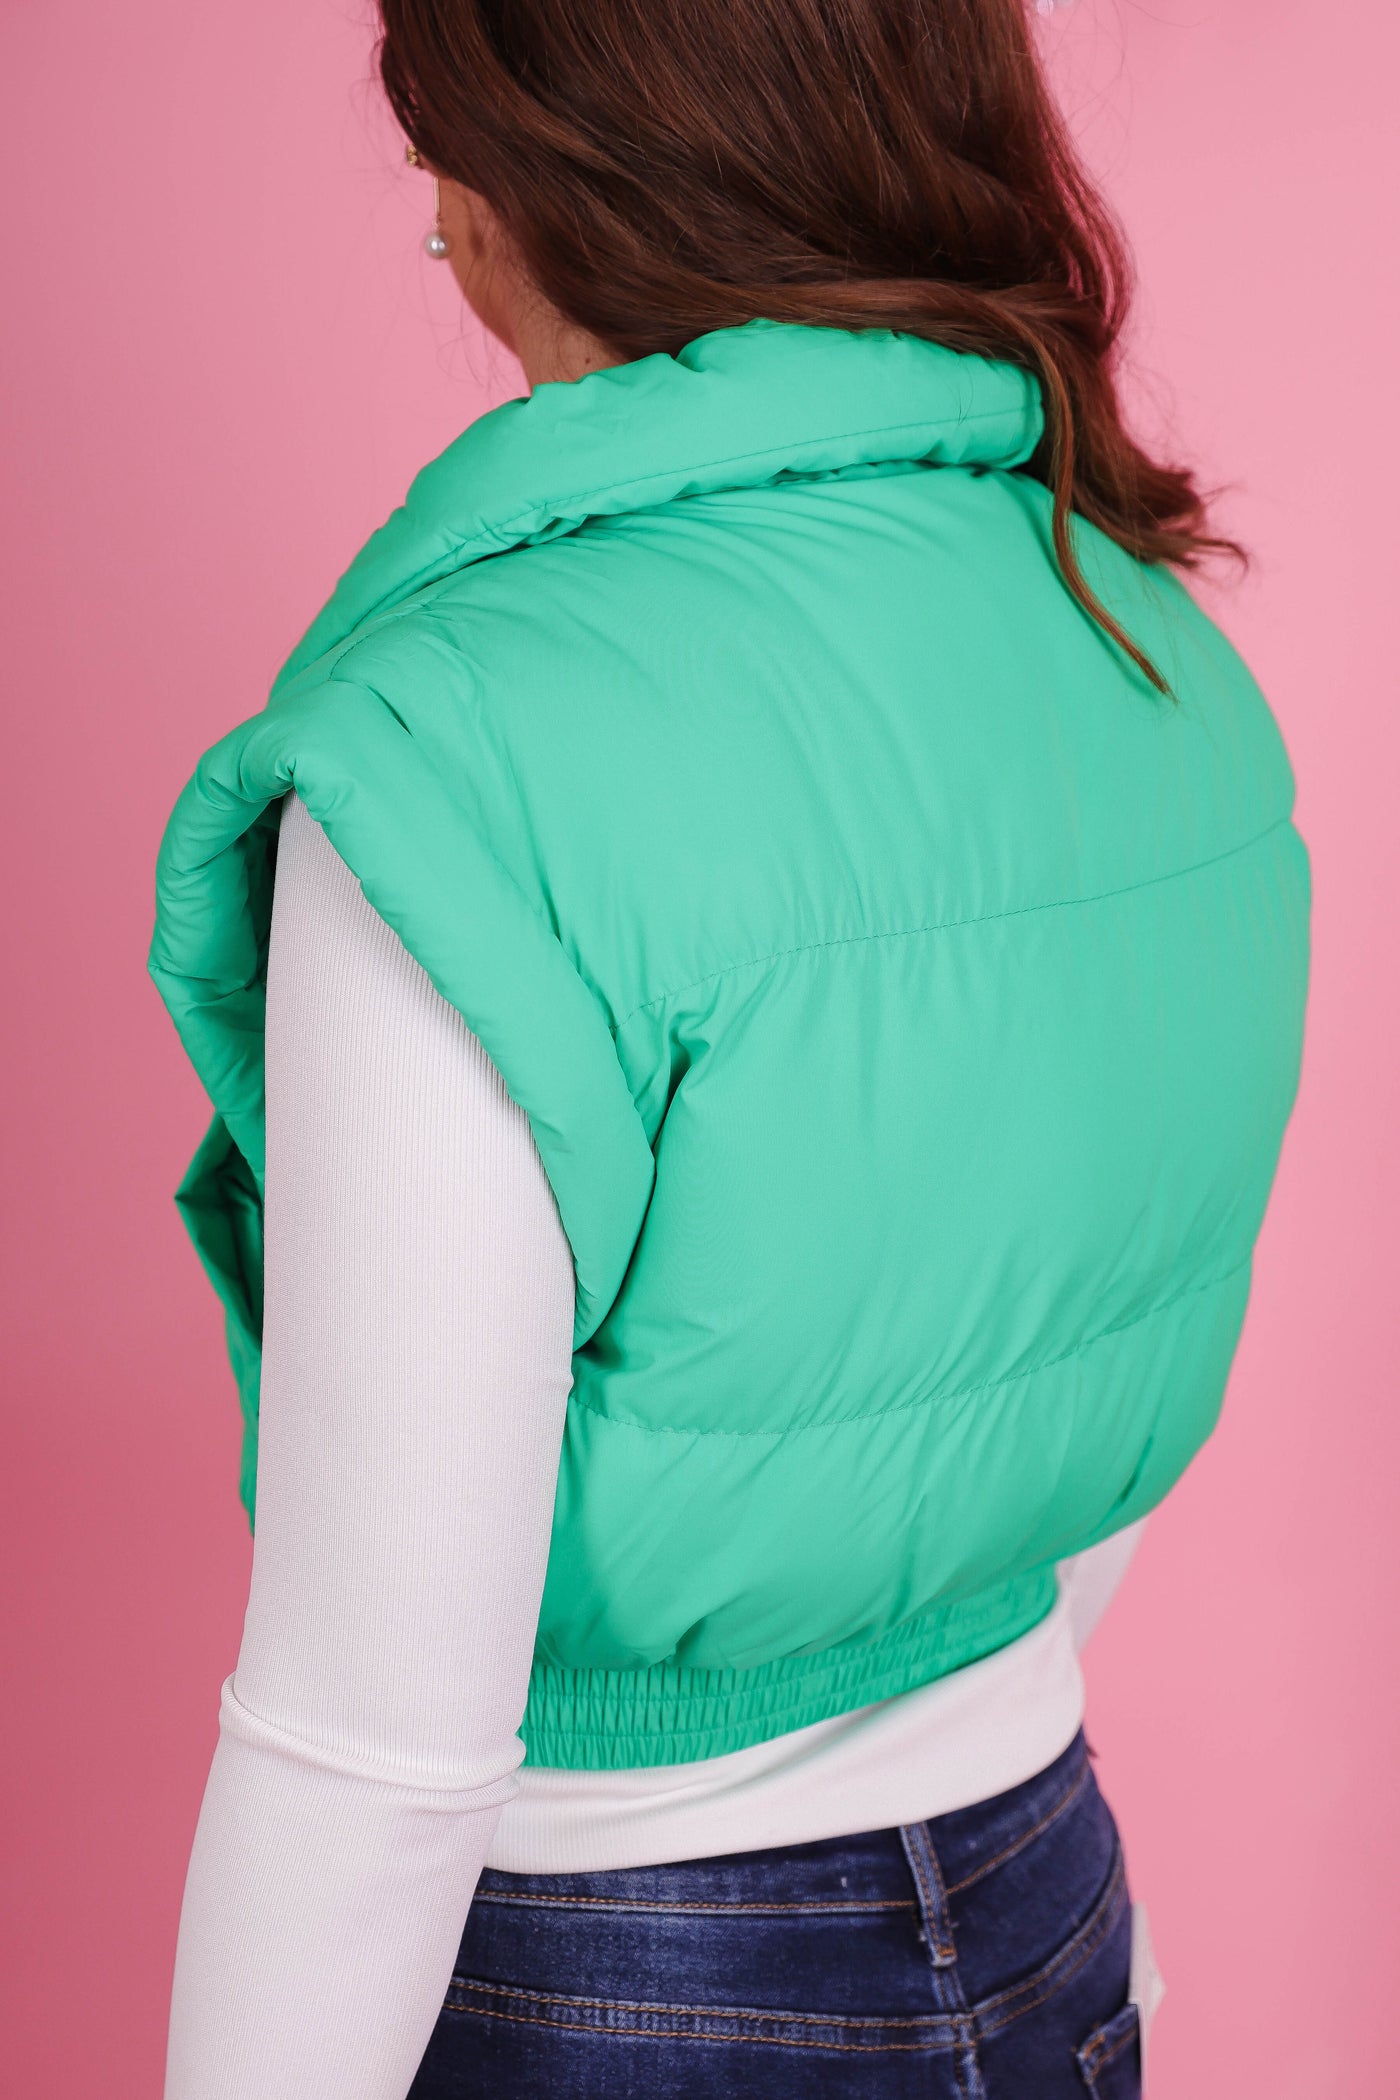 Women's Cropped Green Puffer Vest- Women's Trendy Vest- Cropped Outerwear